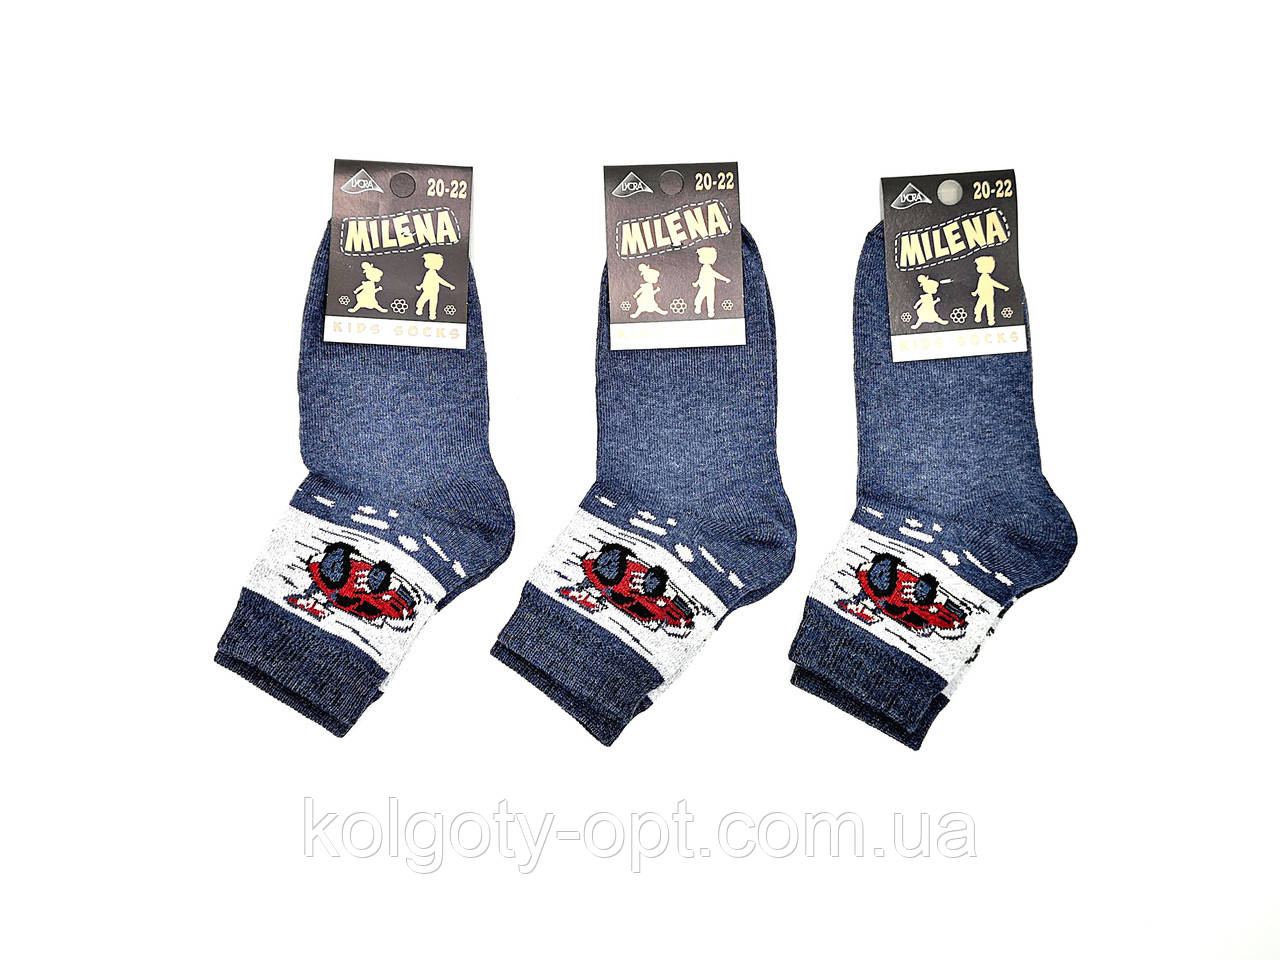 Дитячі шкарпетки для хлопчиків Мілена 20-22 бавовна стрейч